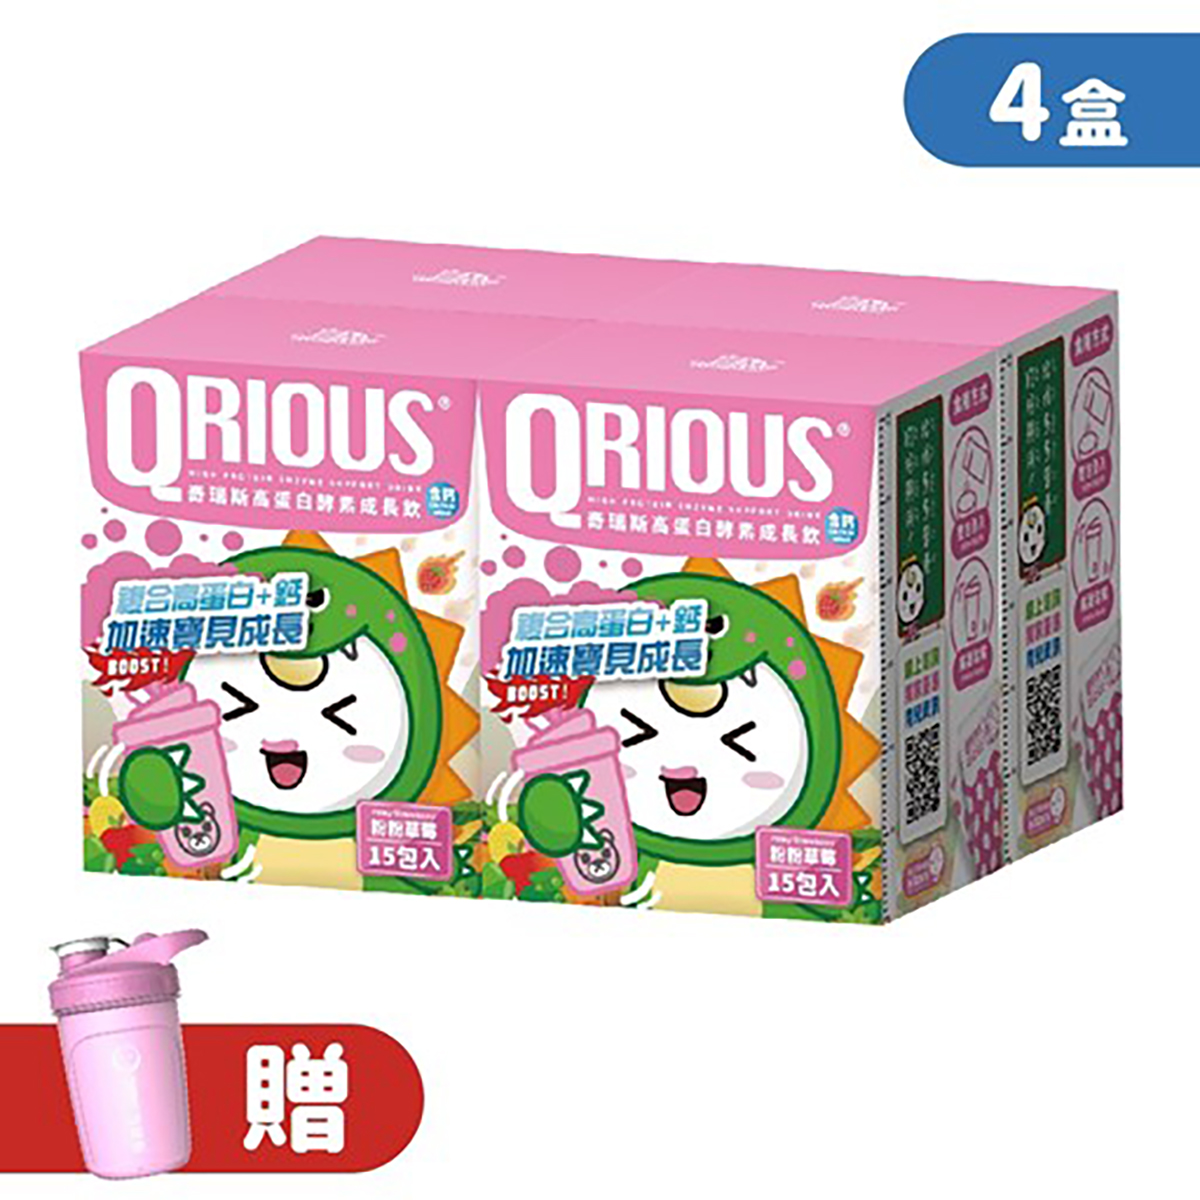 【生長發育必備】QRIOUS®奇瑞斯複方蛋白+鈣成長飲-粉粉草莓(4盒)贈小Ｑ雪克杯(1入)